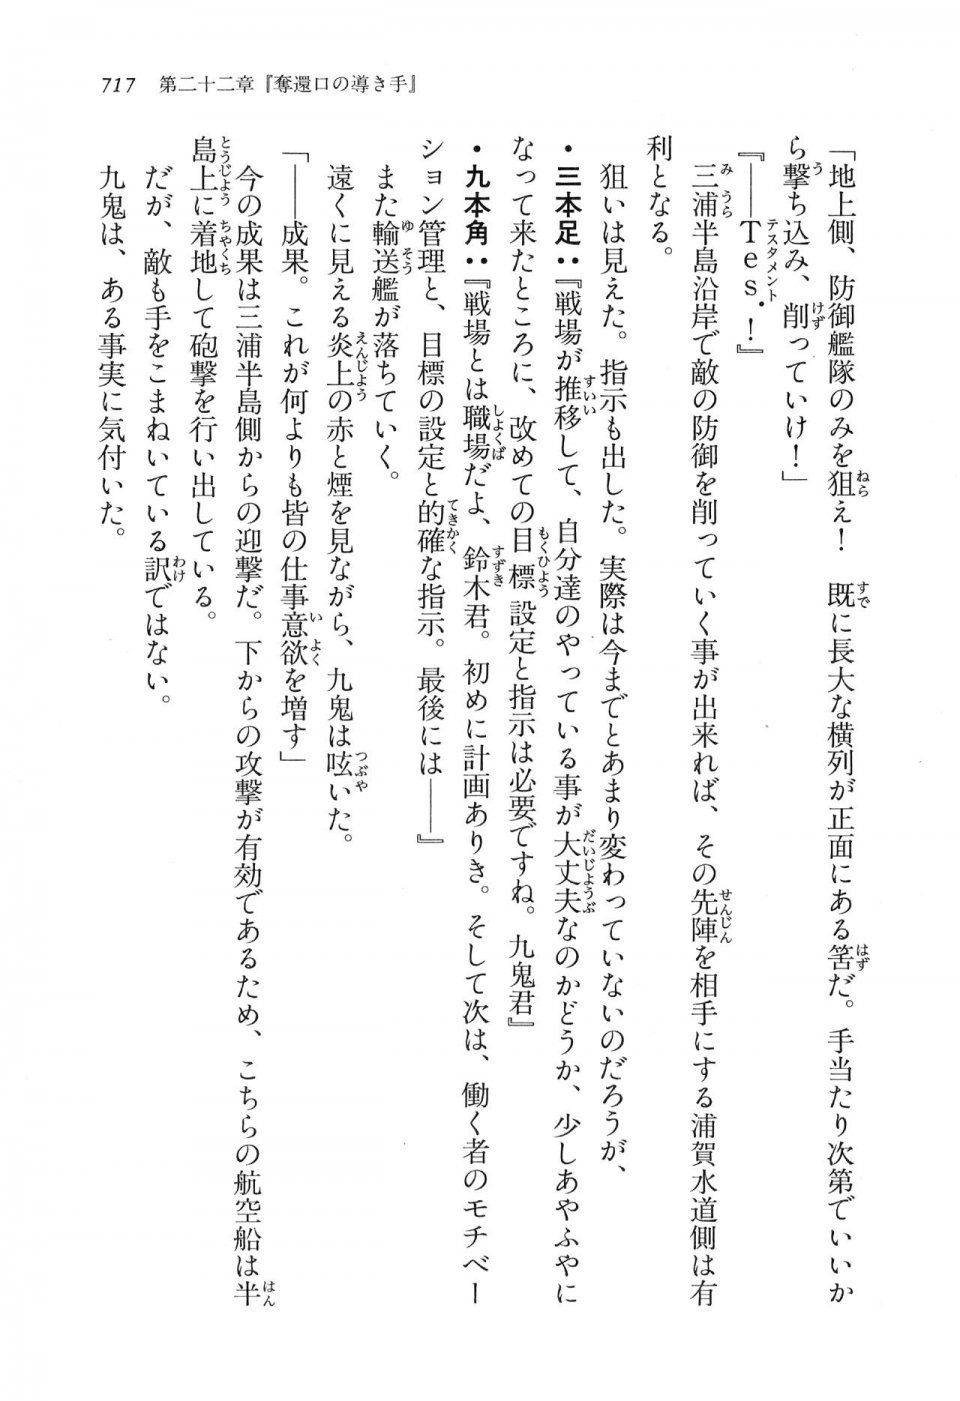 Kyoukai Senjou no Horizon LN Vol 16(7A) - Photo #717